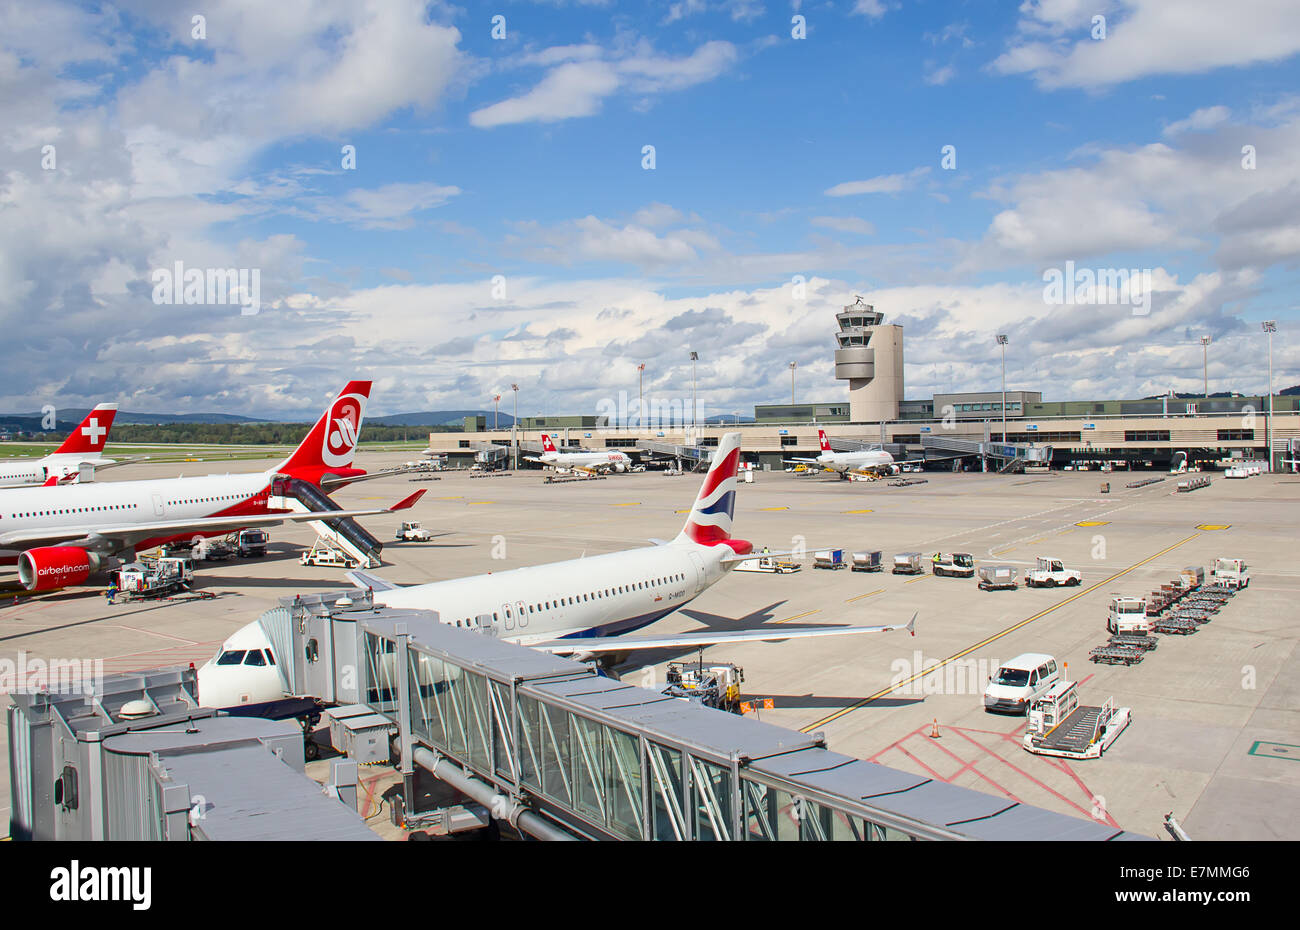 ZURICH - SEPTEMBRE 21:préparer les avions au décollage le 21 septembre 2014 à Zurich, Suisse. Zurich International Airpor Banque D'Images